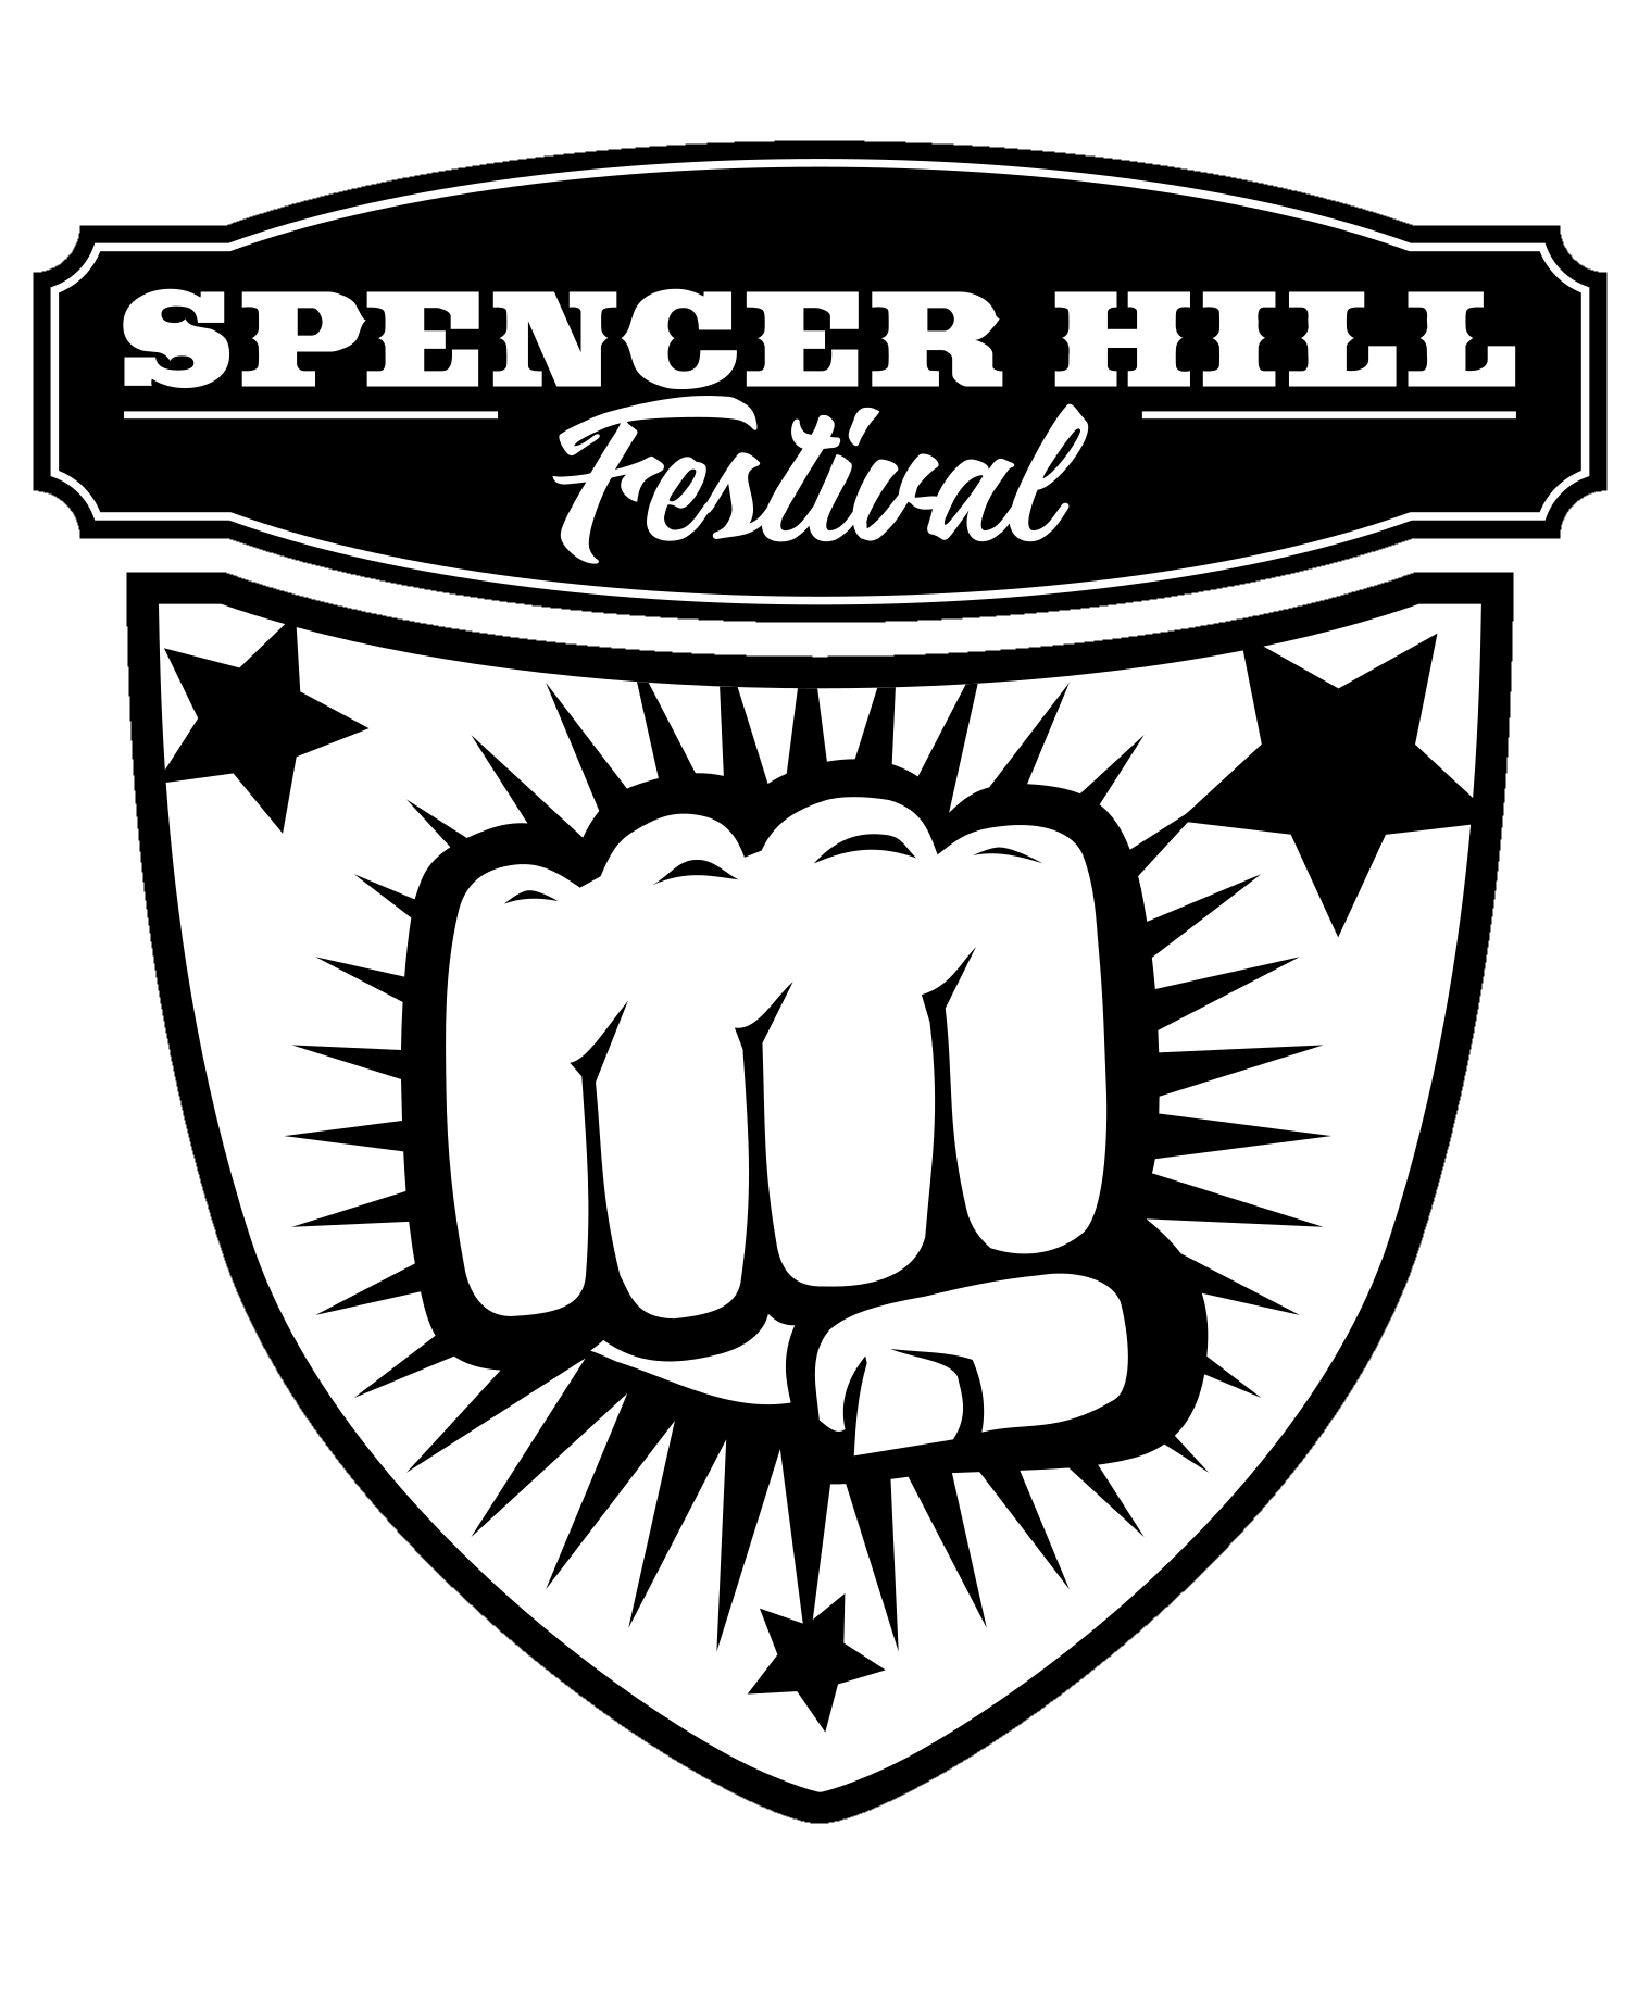 Spencerhill Festival - Bud Spencer und Terence Hill Fantreffen